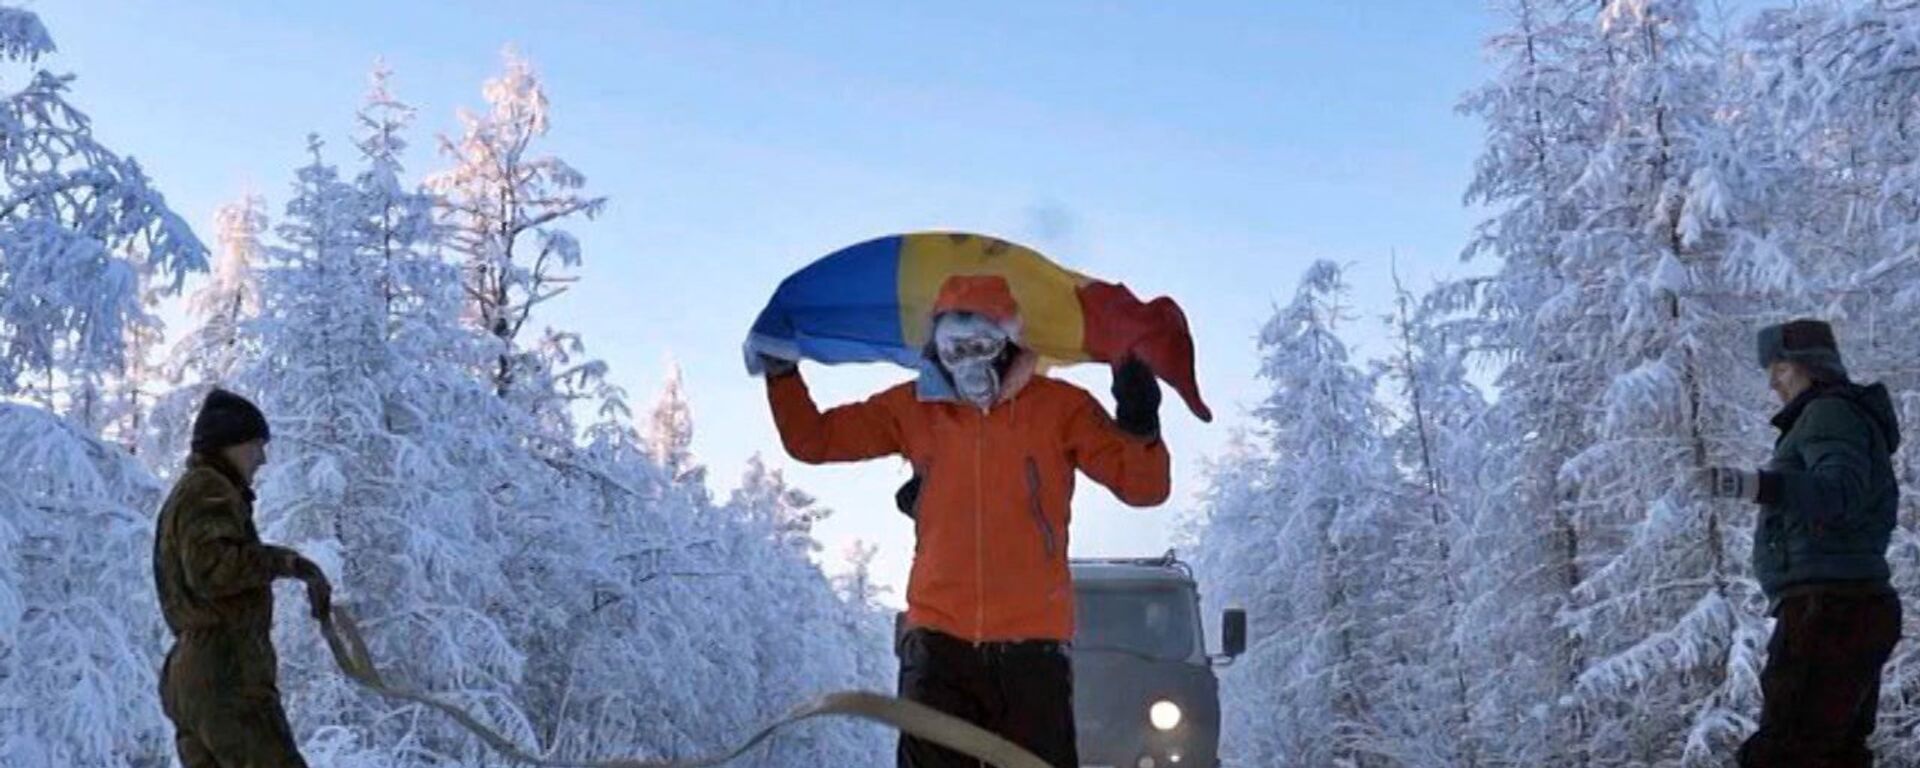 Moldovalı ekstrem sporcu, Yakutistan’da eksi 60 derecede 50 kilometre yol kat etti - Sputnik Türkiye, 1920, 16.01.2019